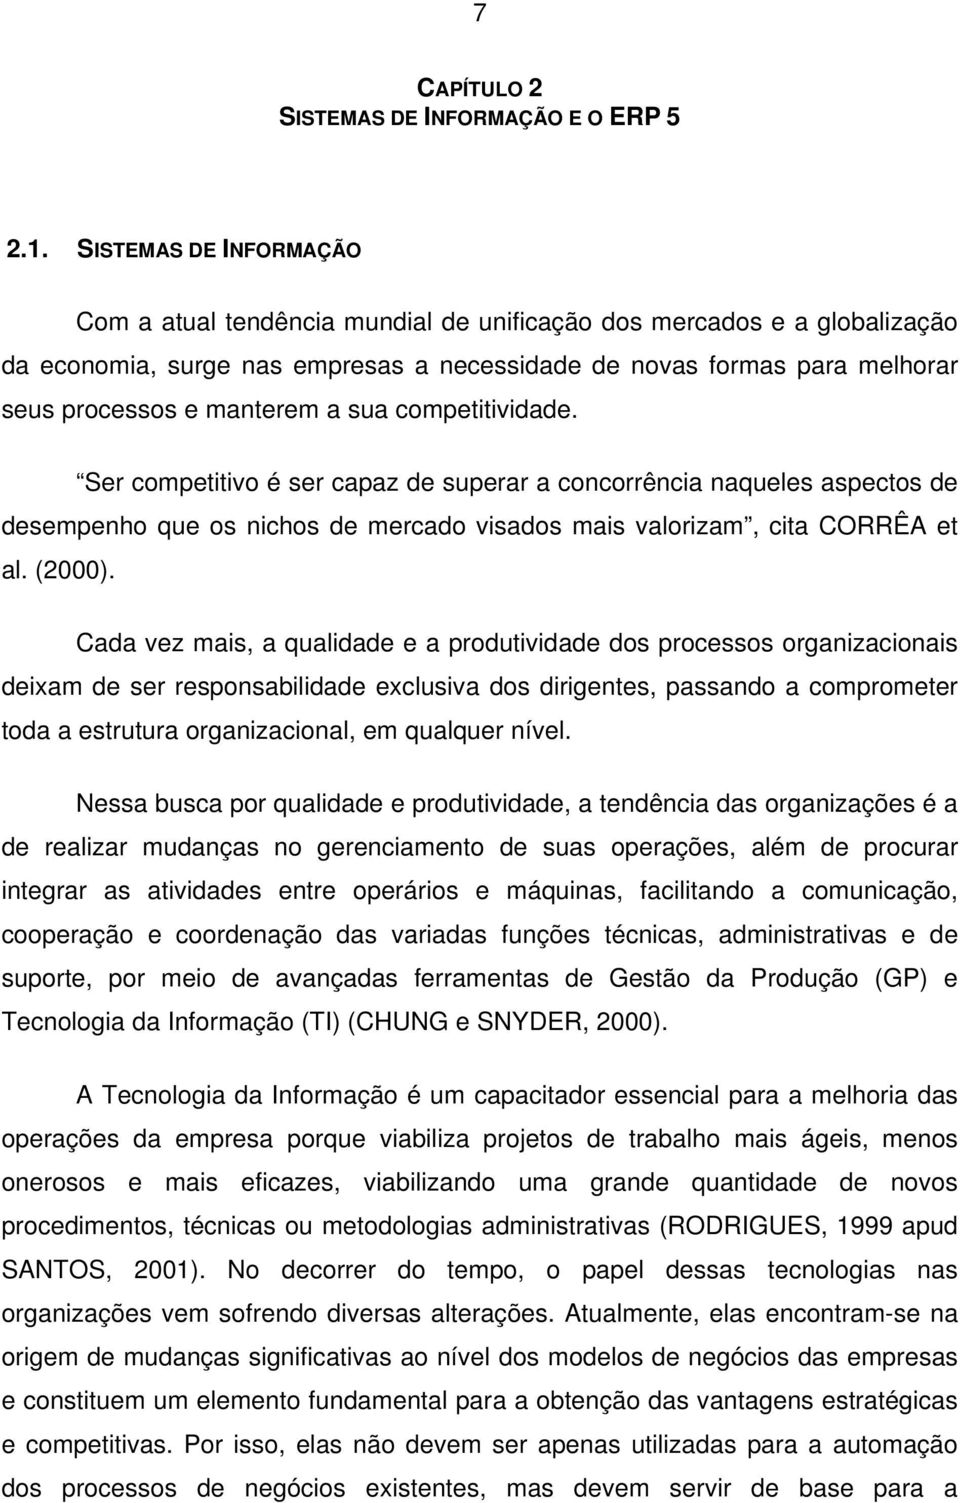 a sua competitividade. Ser competitivo é ser capaz de superar a concorrência naqueles aspectos de desempenho que os nichos de mercado visados mais valorizam, cita CORRÊA et al. (2000).